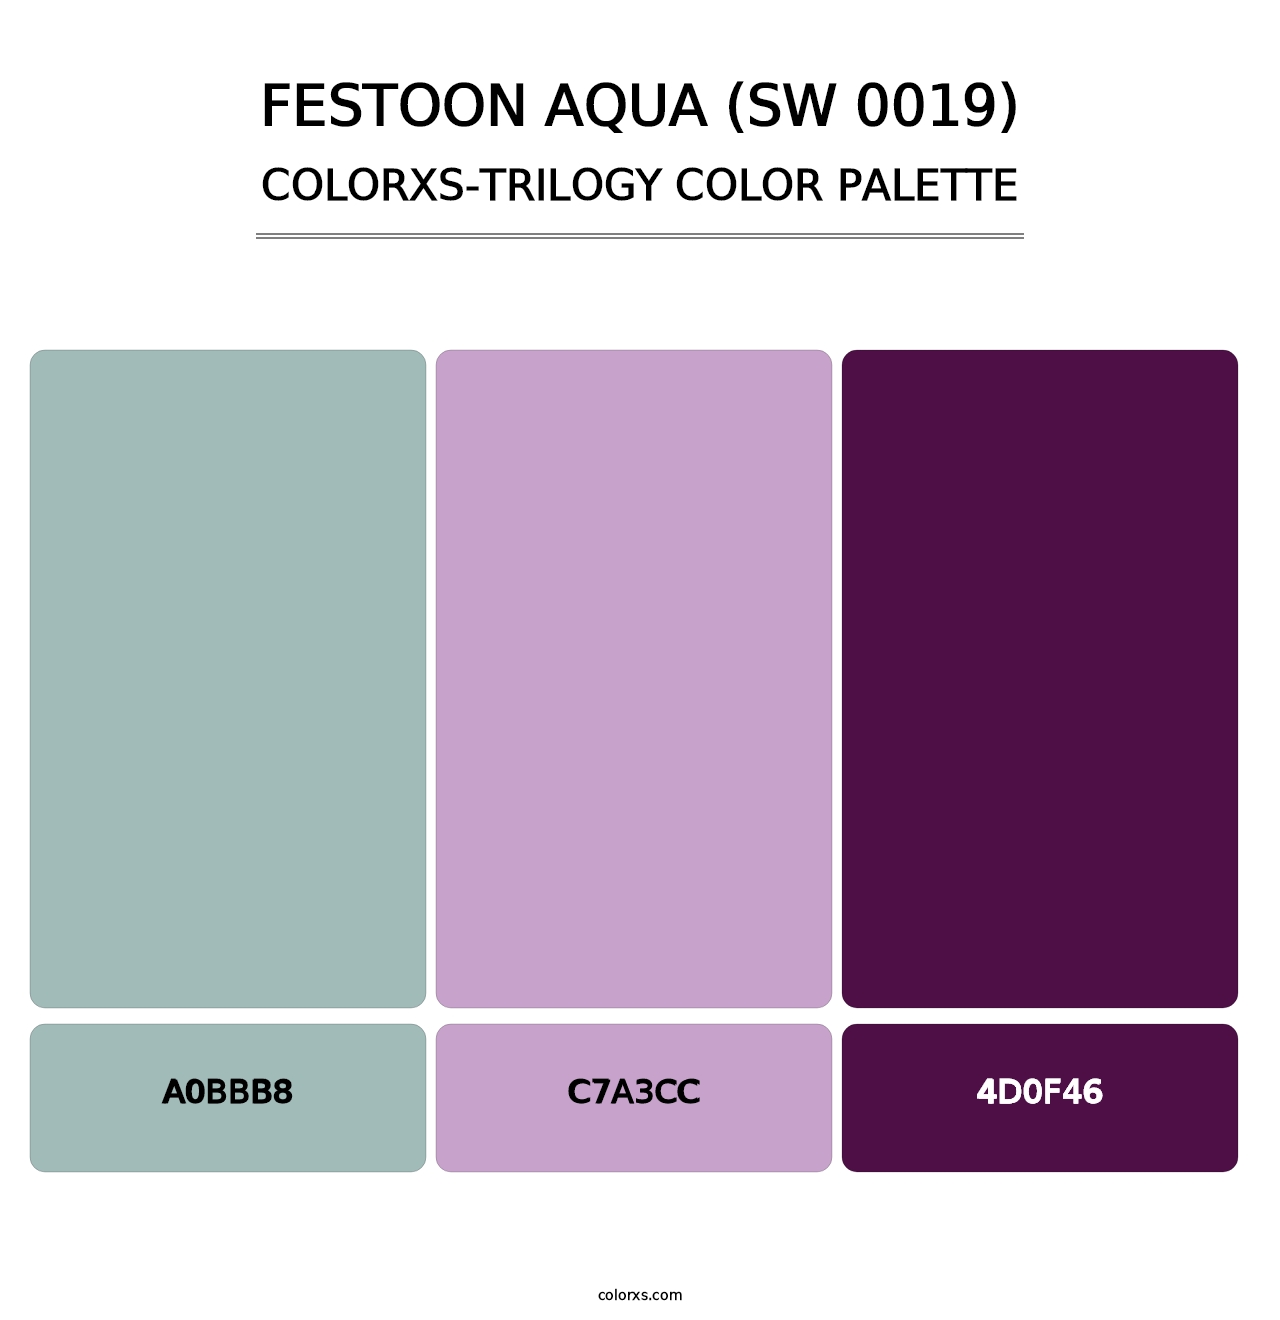 Festoon Aqua (SW 0019) - Colorxs Trilogy Palette